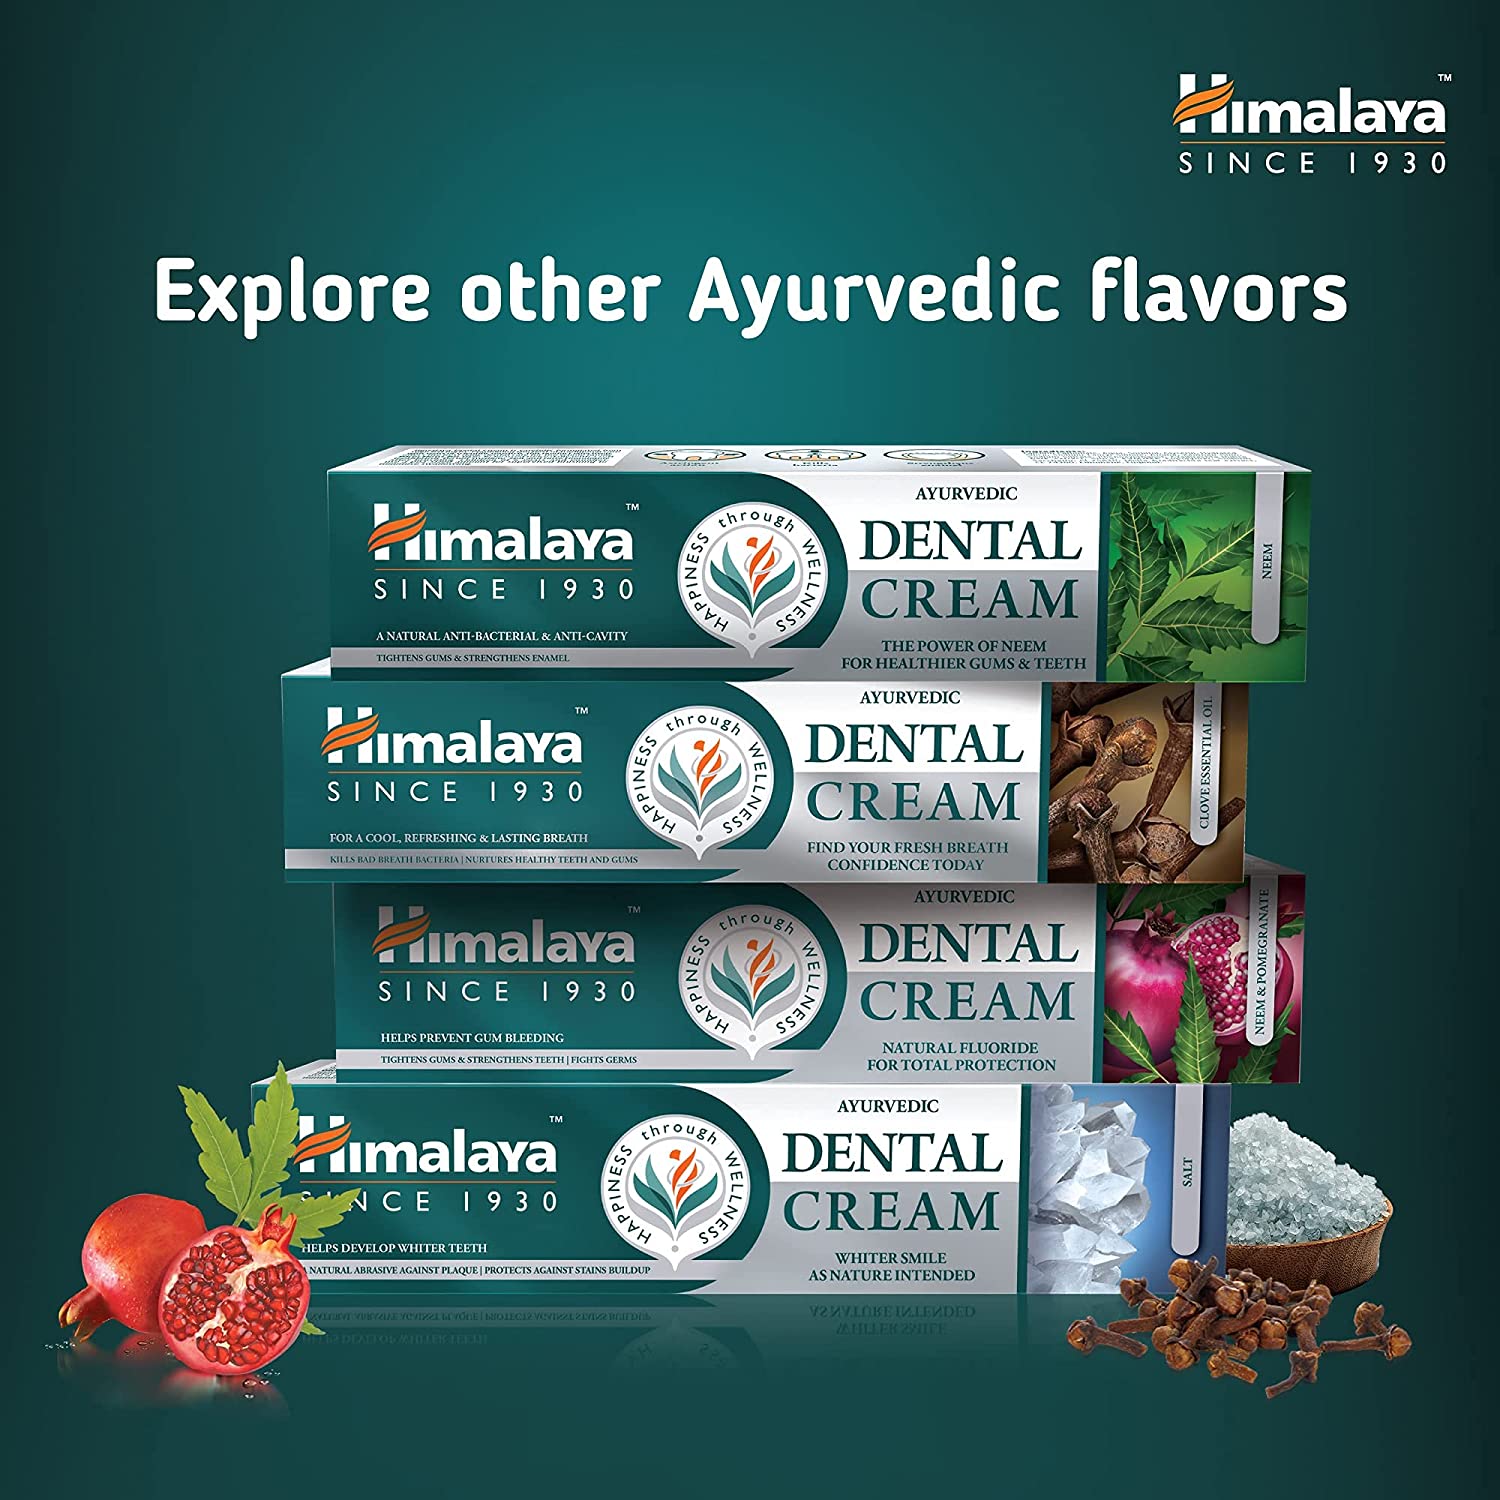 Himalaya Ayurvedic Dental Cream Range